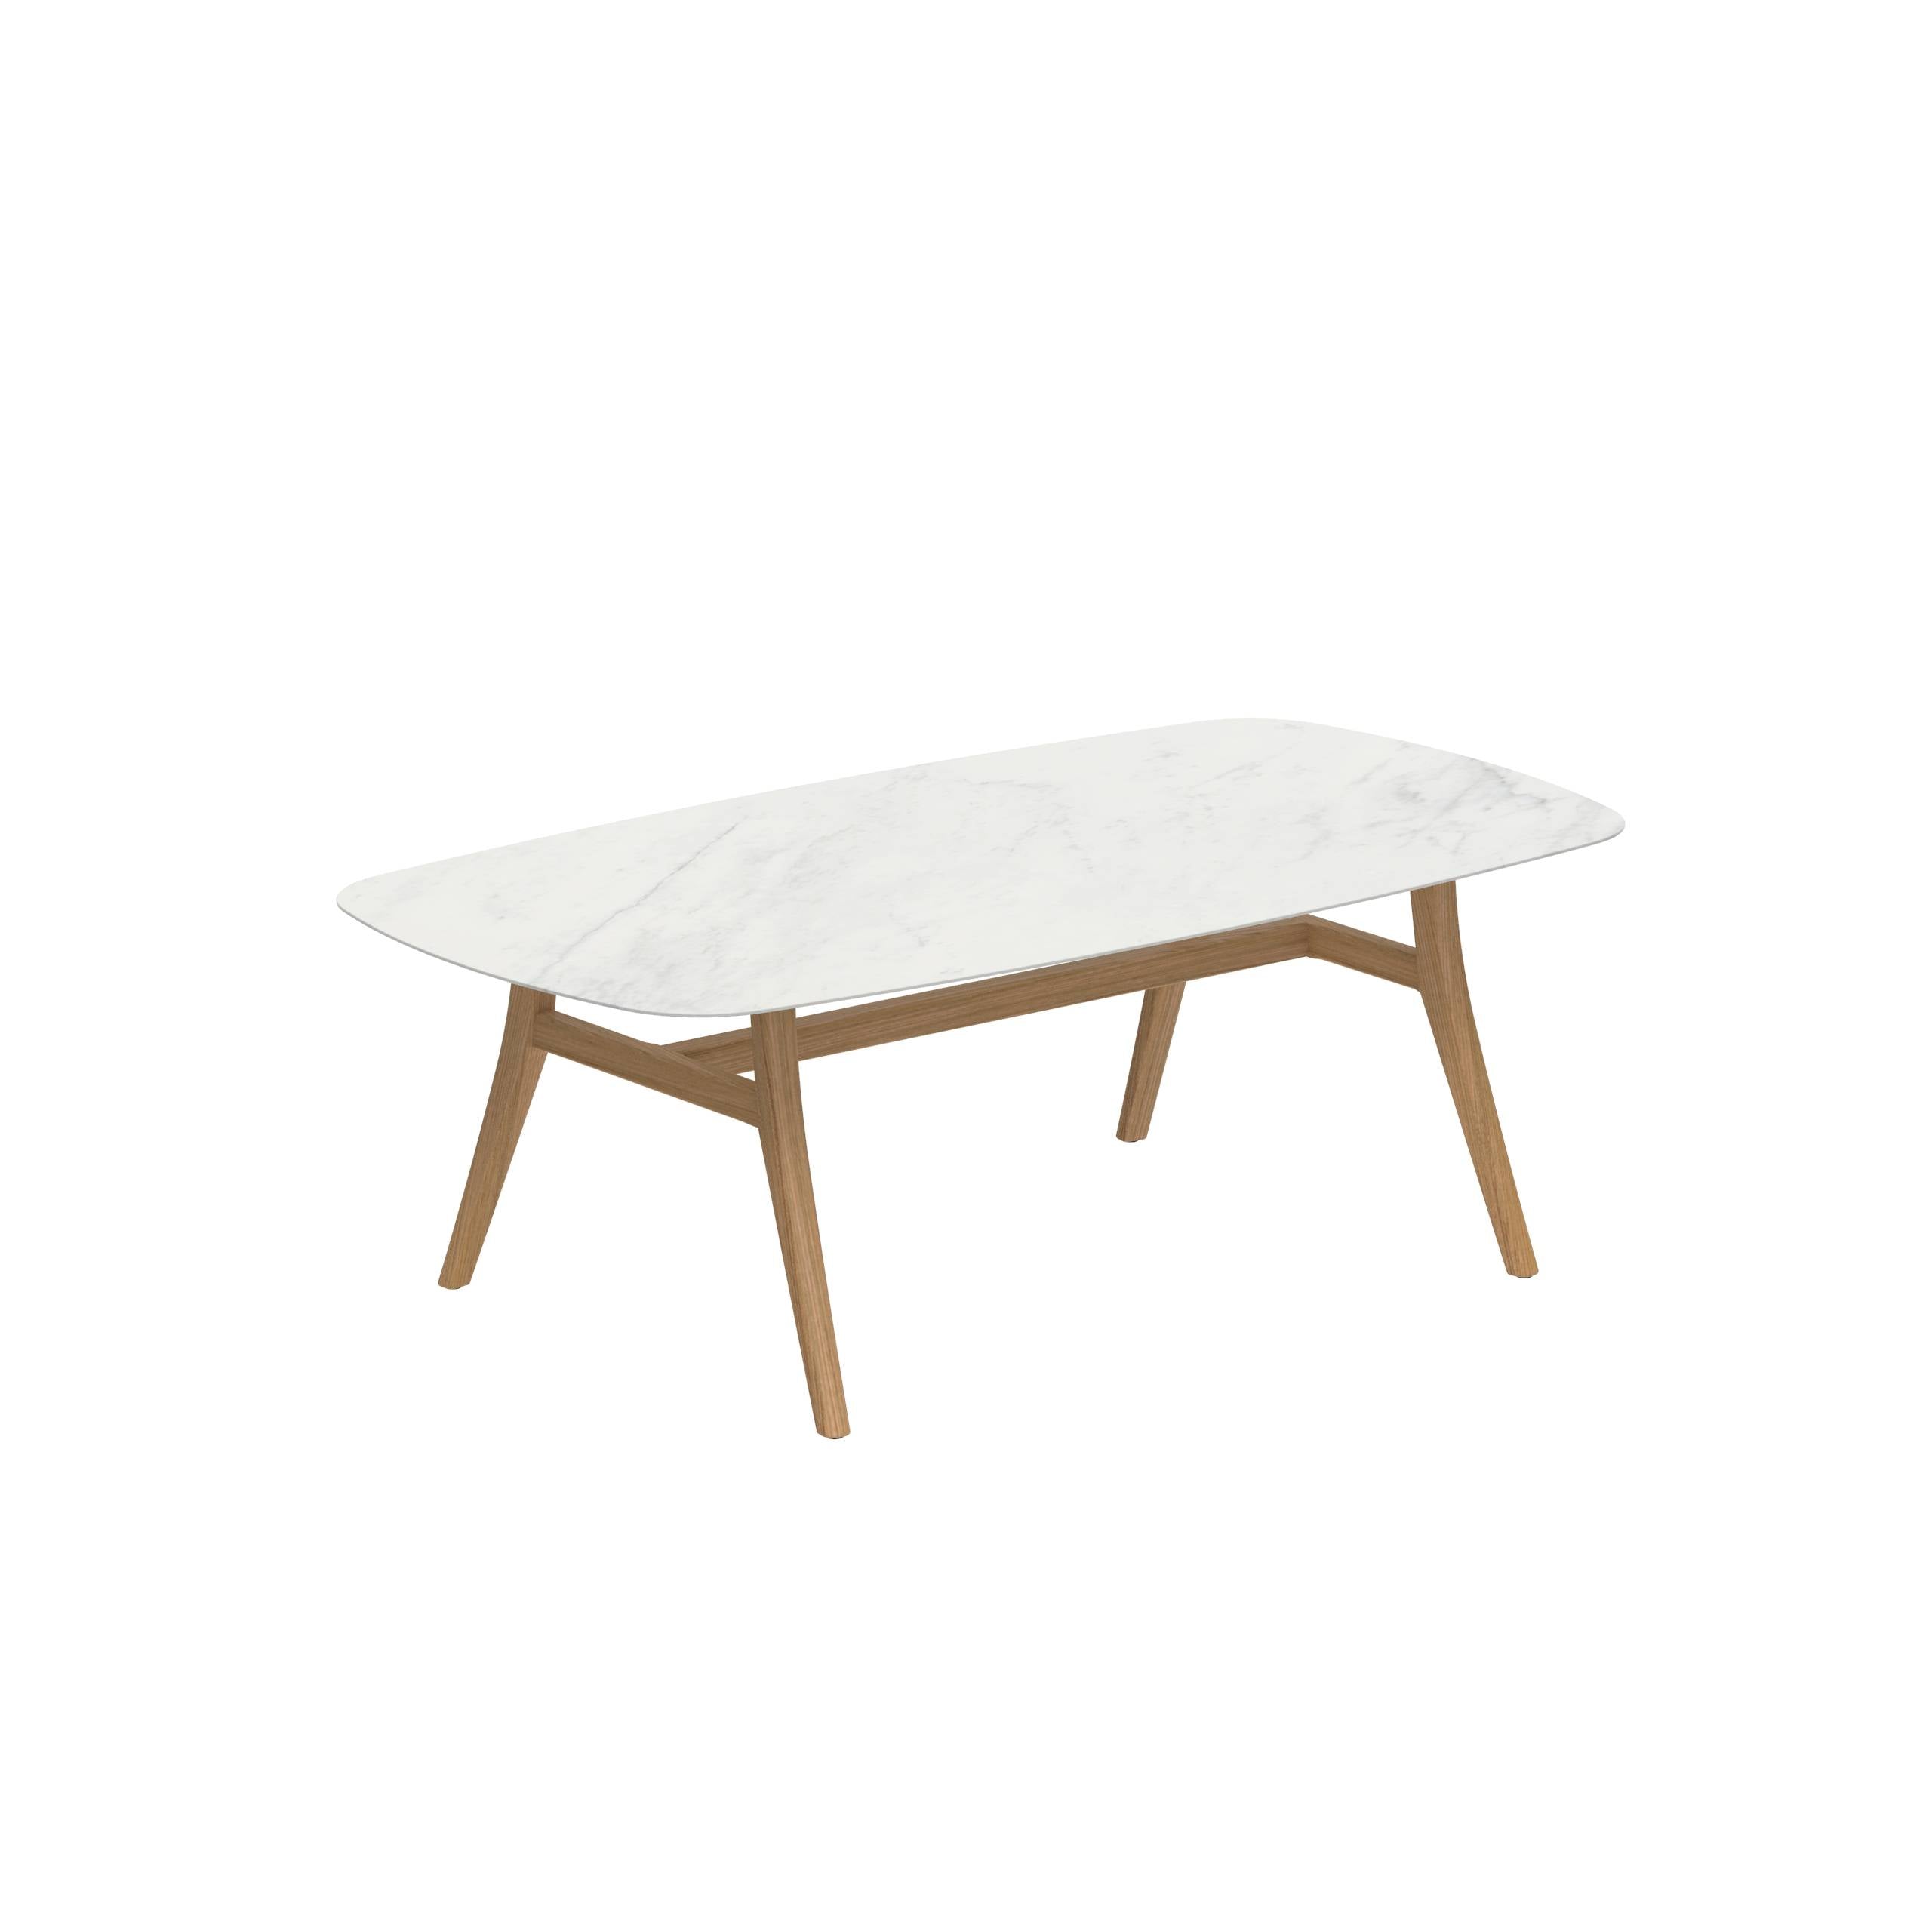 Zidiz Table 220x120cm Ceramic Bianco Statuario